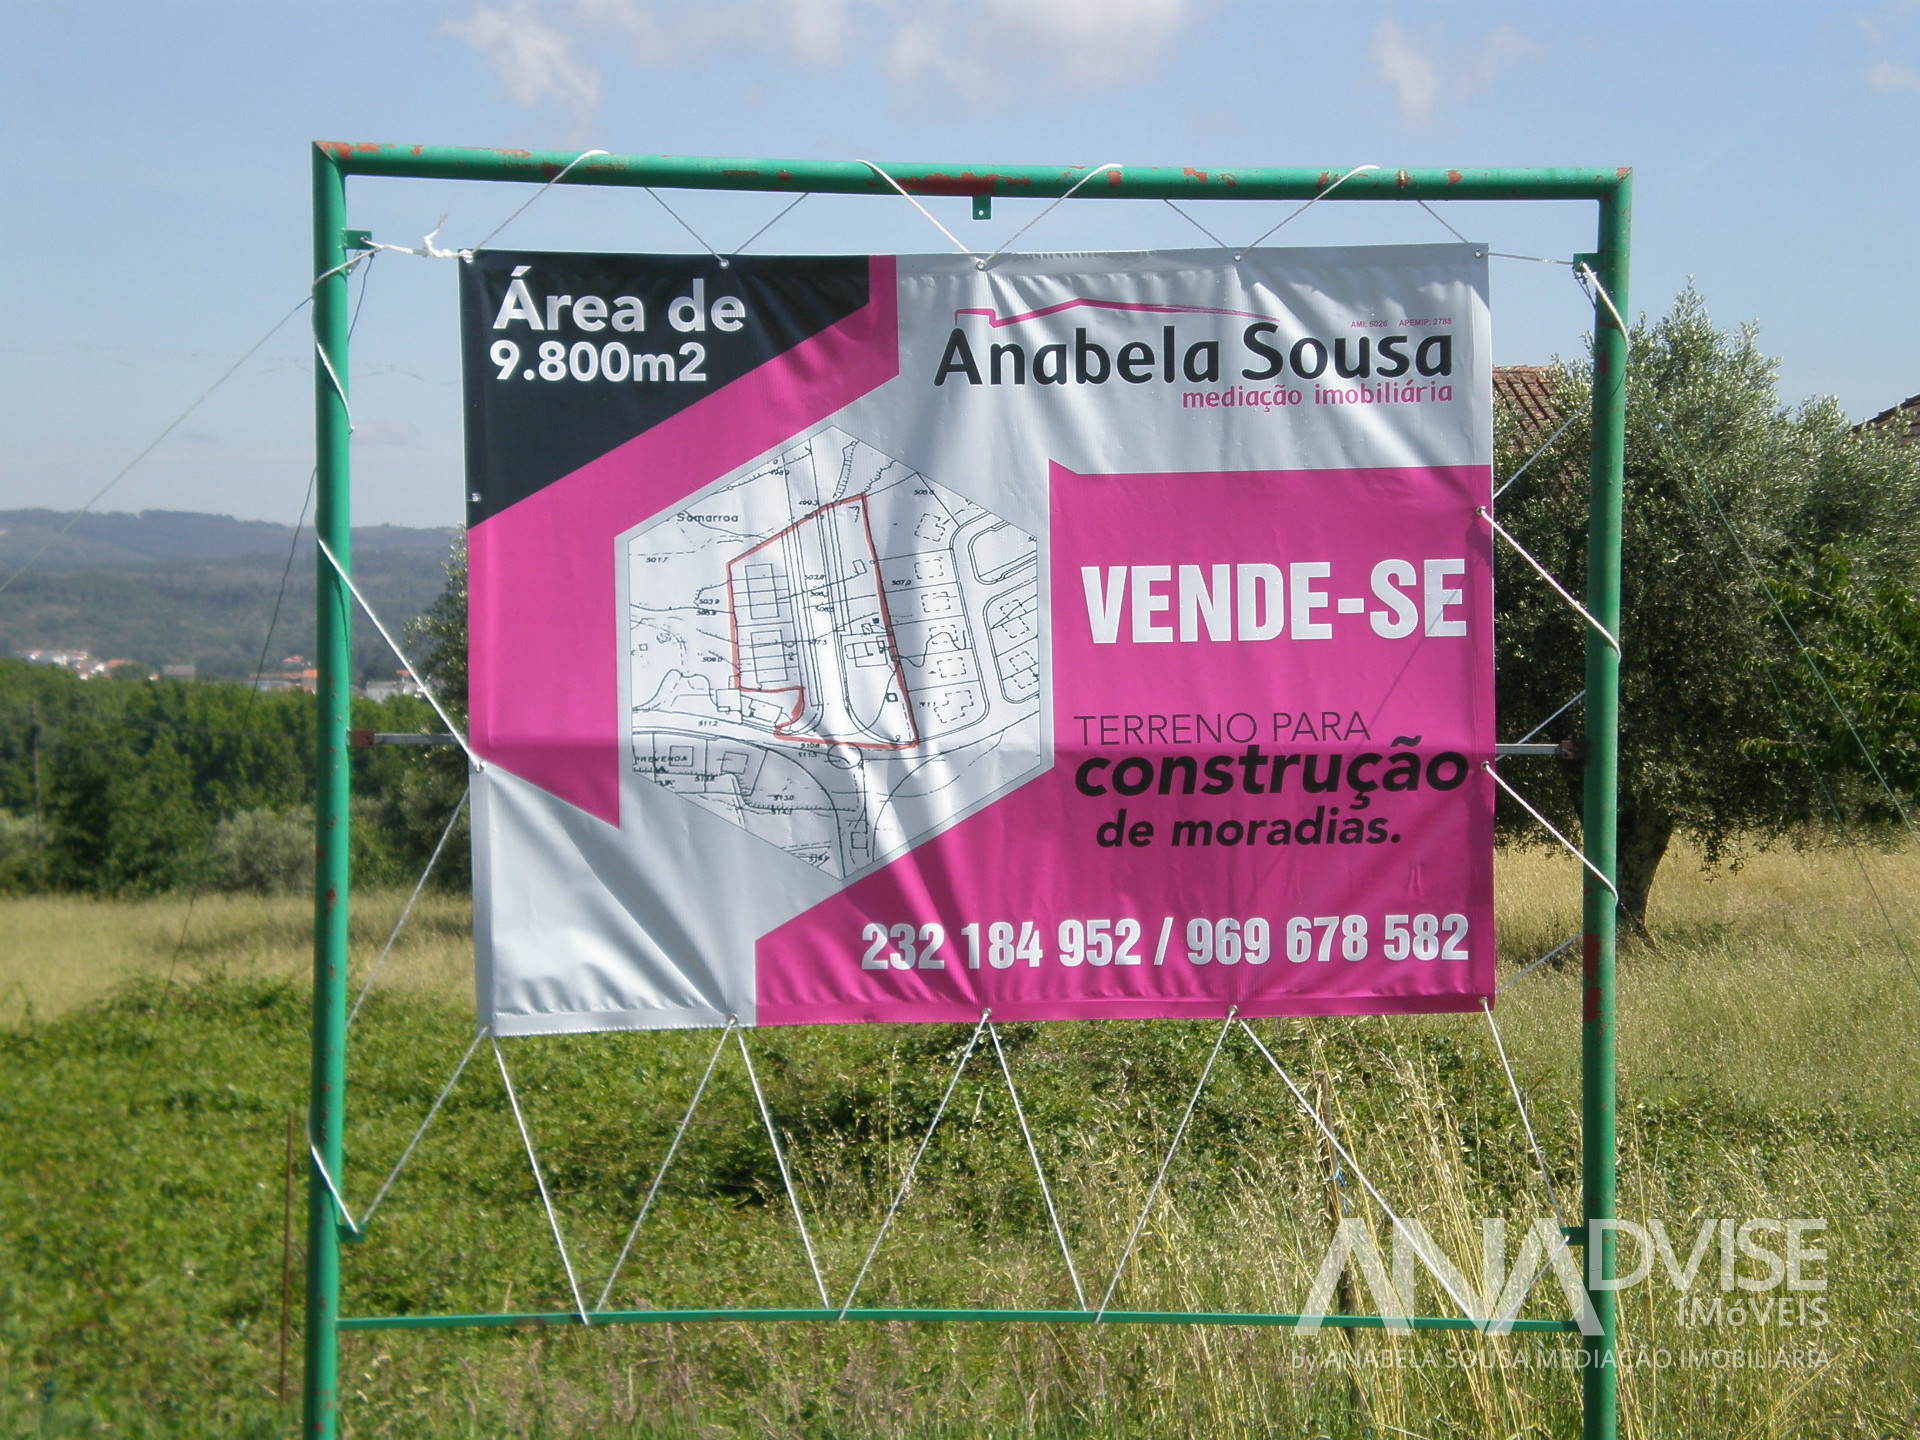 Anabela Sousa - Mediação Imobiliária Unipessoal, Lda